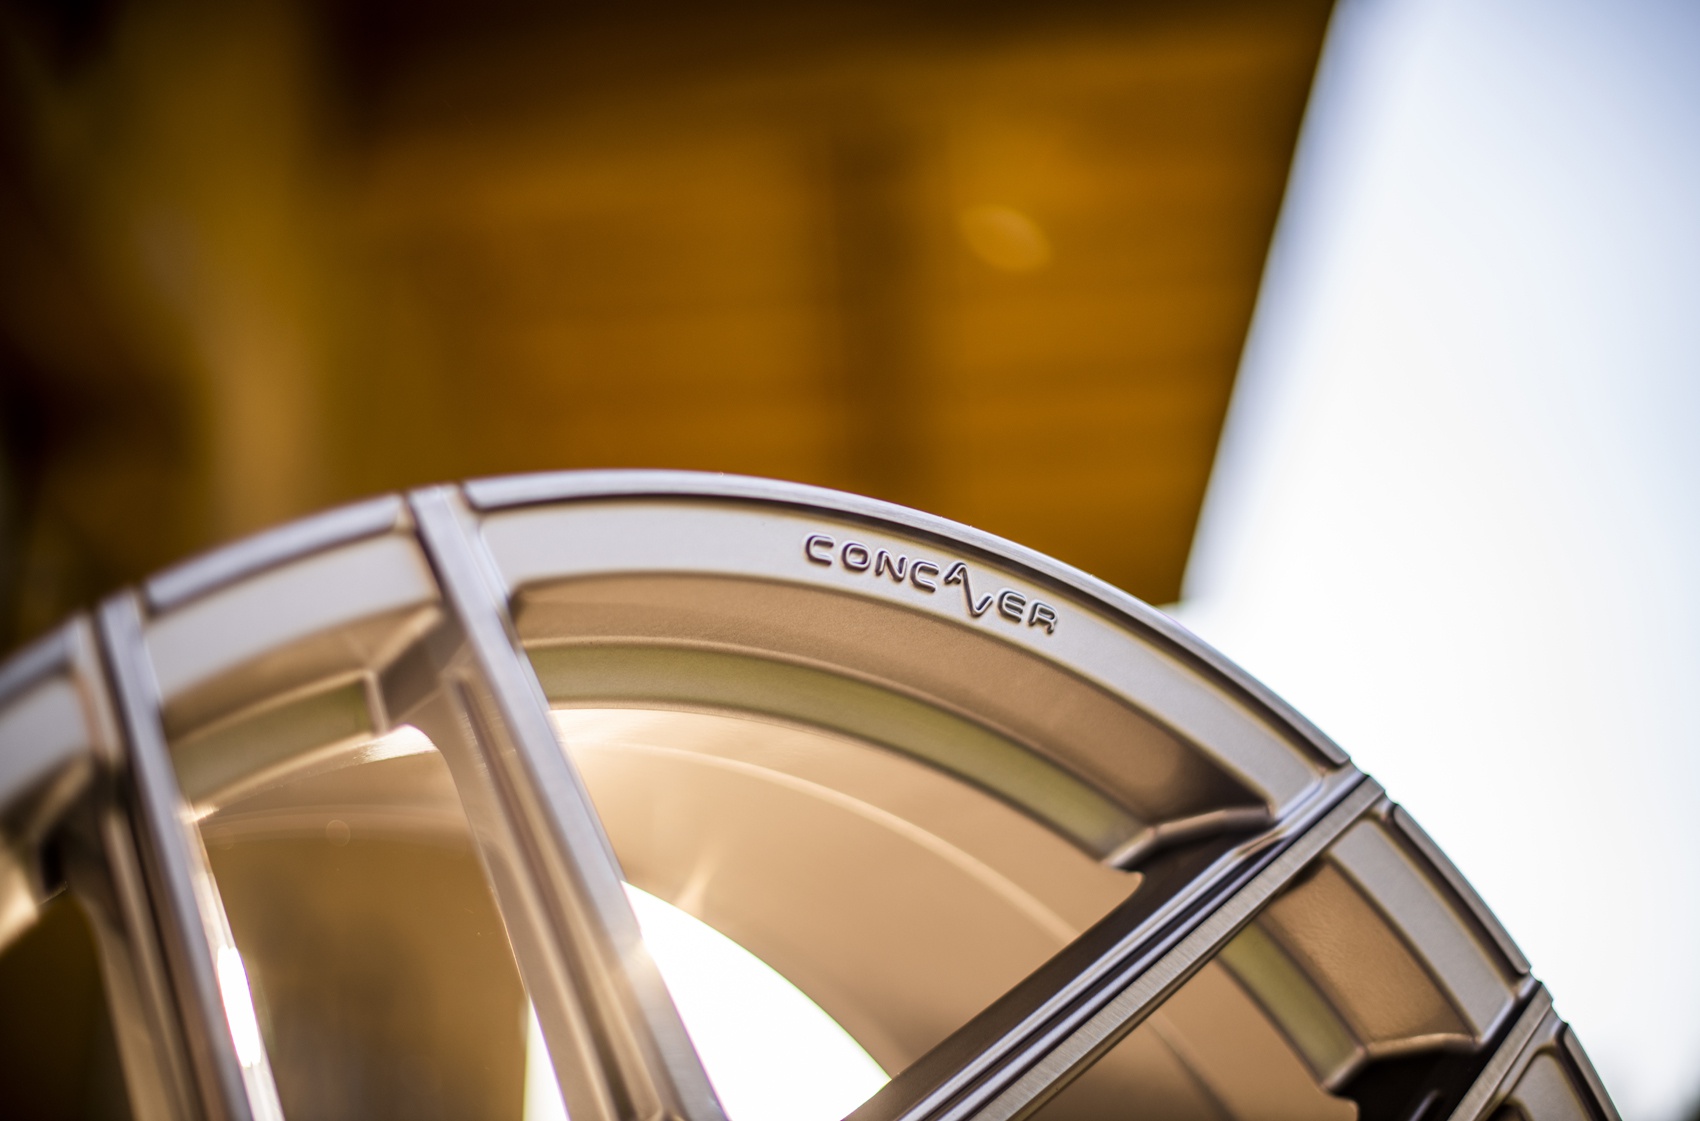   Concaver CVR5 Brushed Titanium